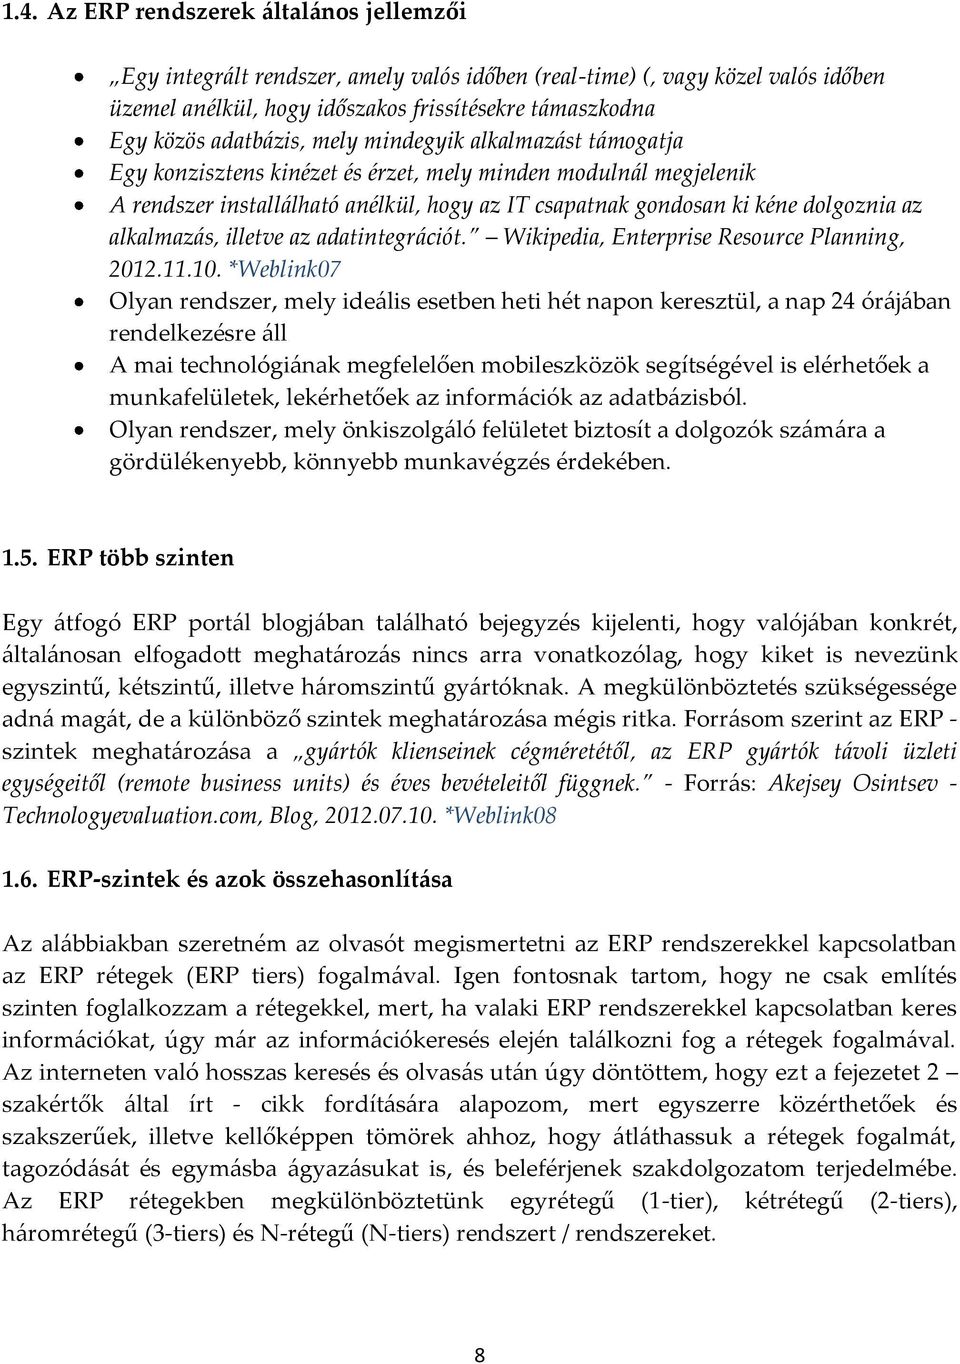 alkalmazás, illetve az adatintegrációt. Wikipedia, Enterprise Resource Planning, 2012.11.10.